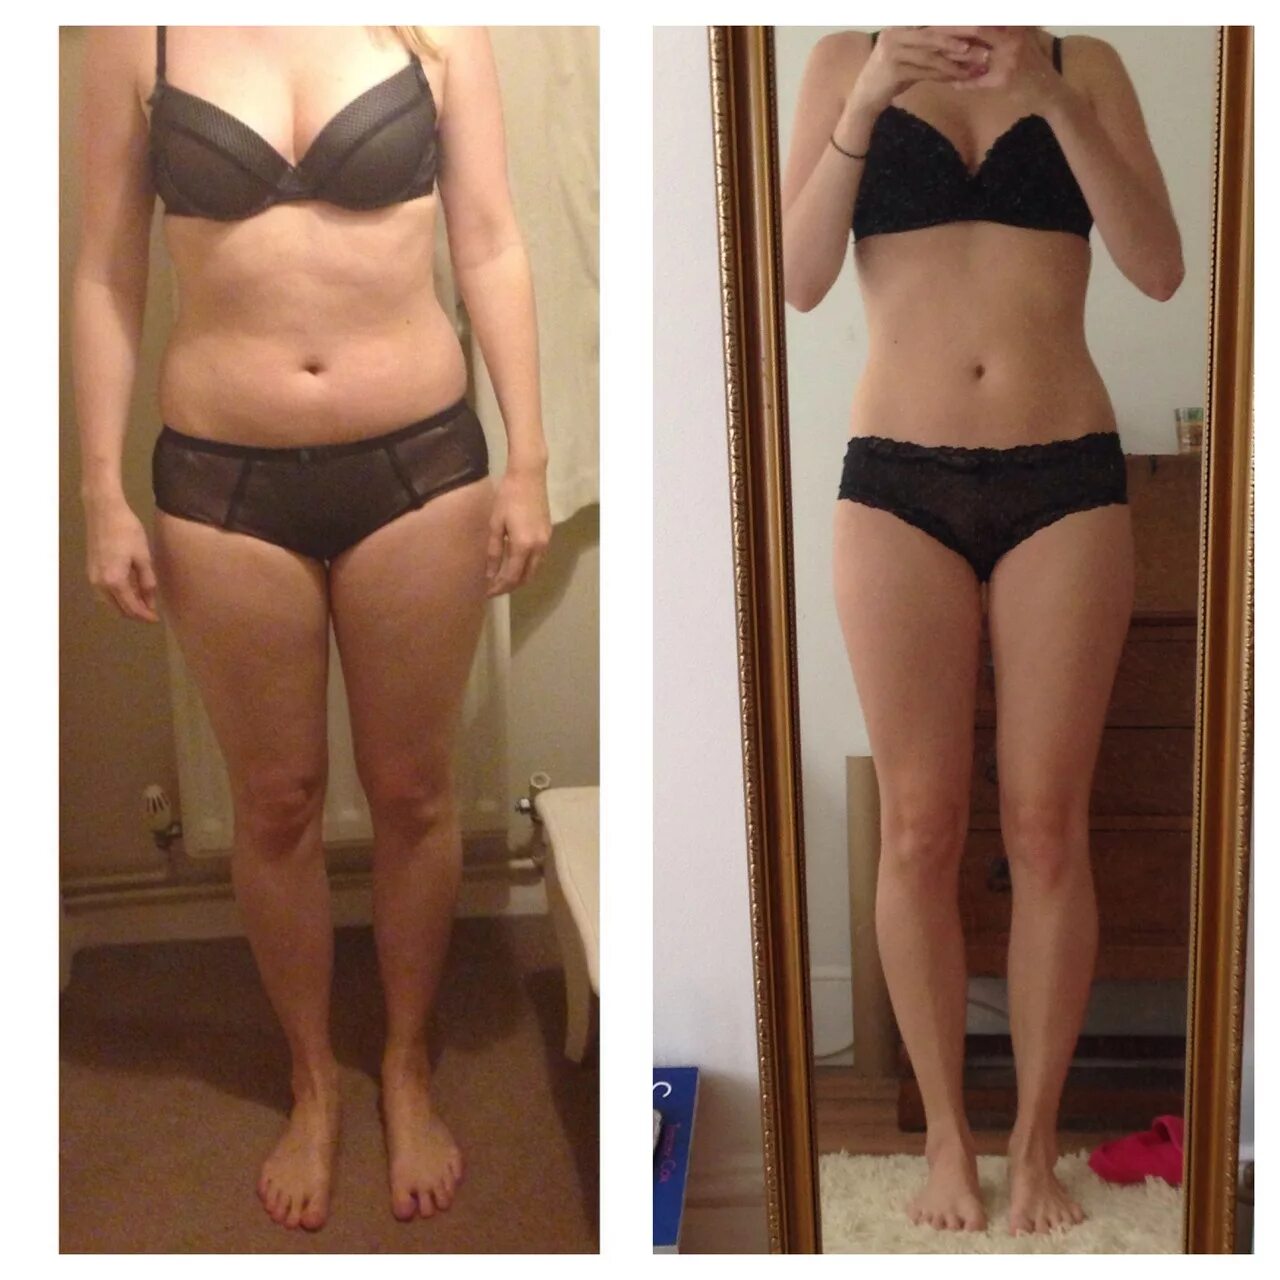 Похудение до и после. Результаты похудения. Фигура до и после. До и после похудения девушки. 60 кг 20 г 20 кг